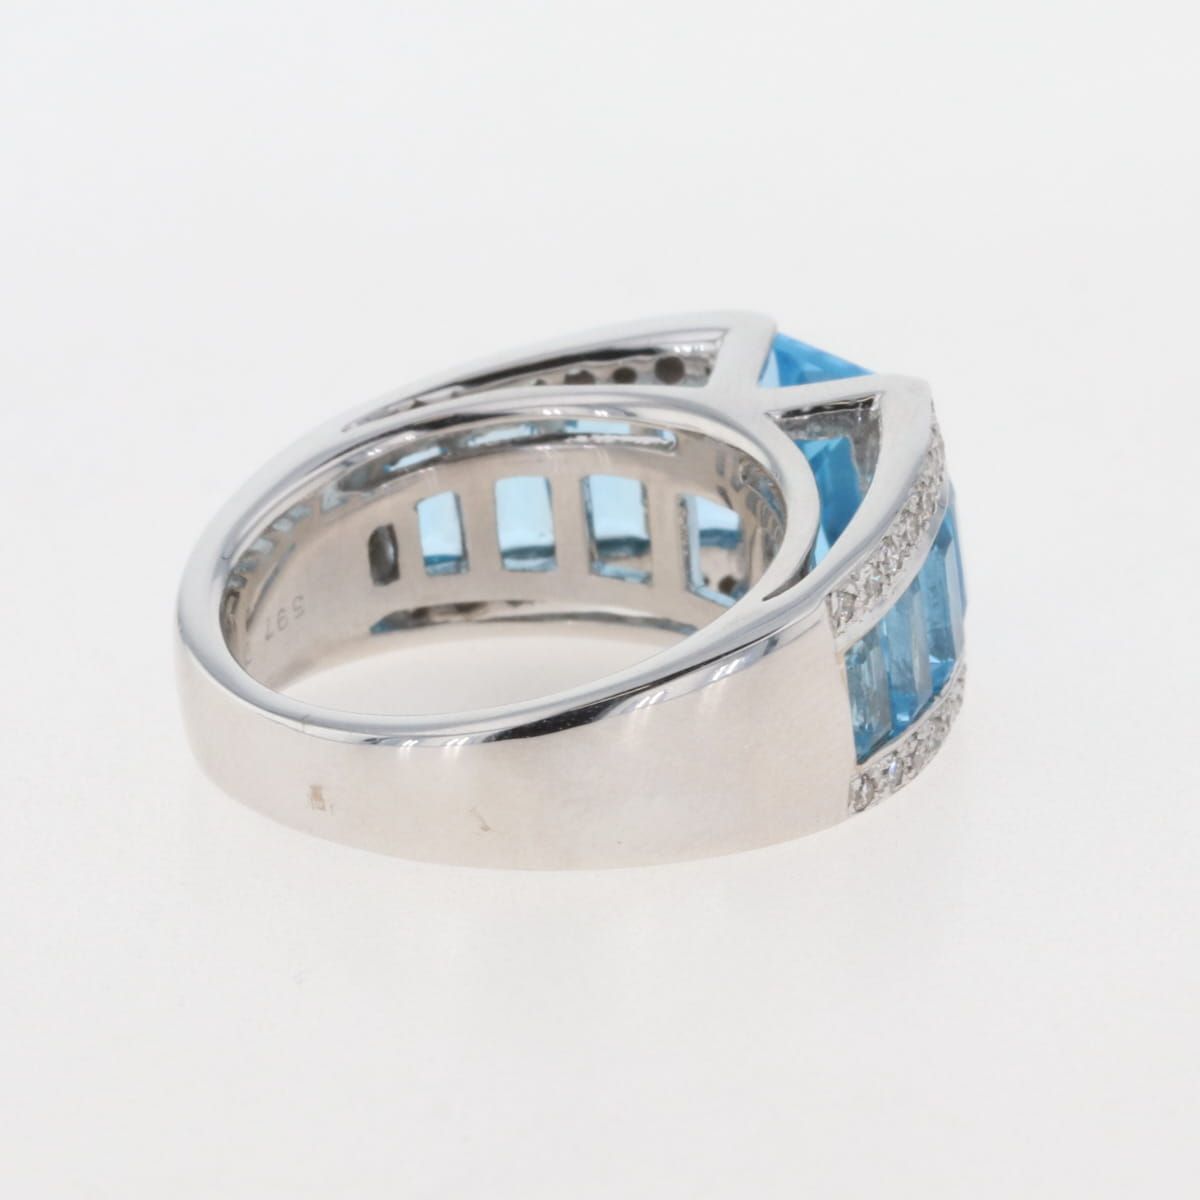 ブルートパーズ デザインリング 指輪 メレダイヤ リング 10号 750 